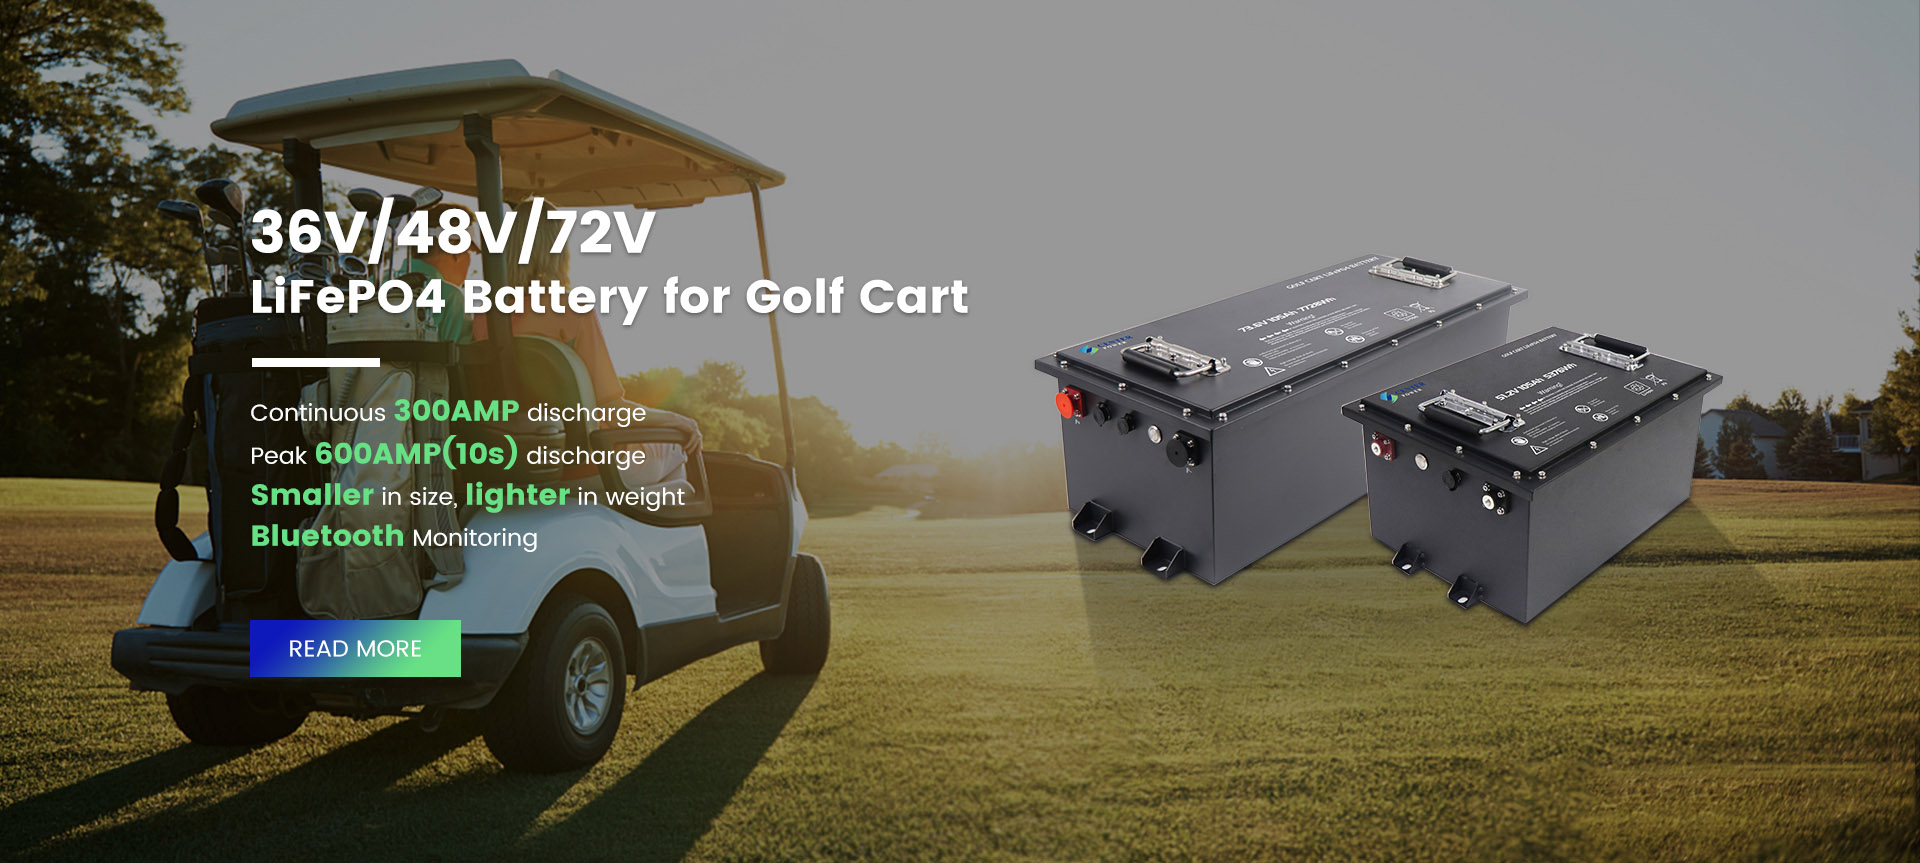 Bateria LifePo4 para carrinho de golfe